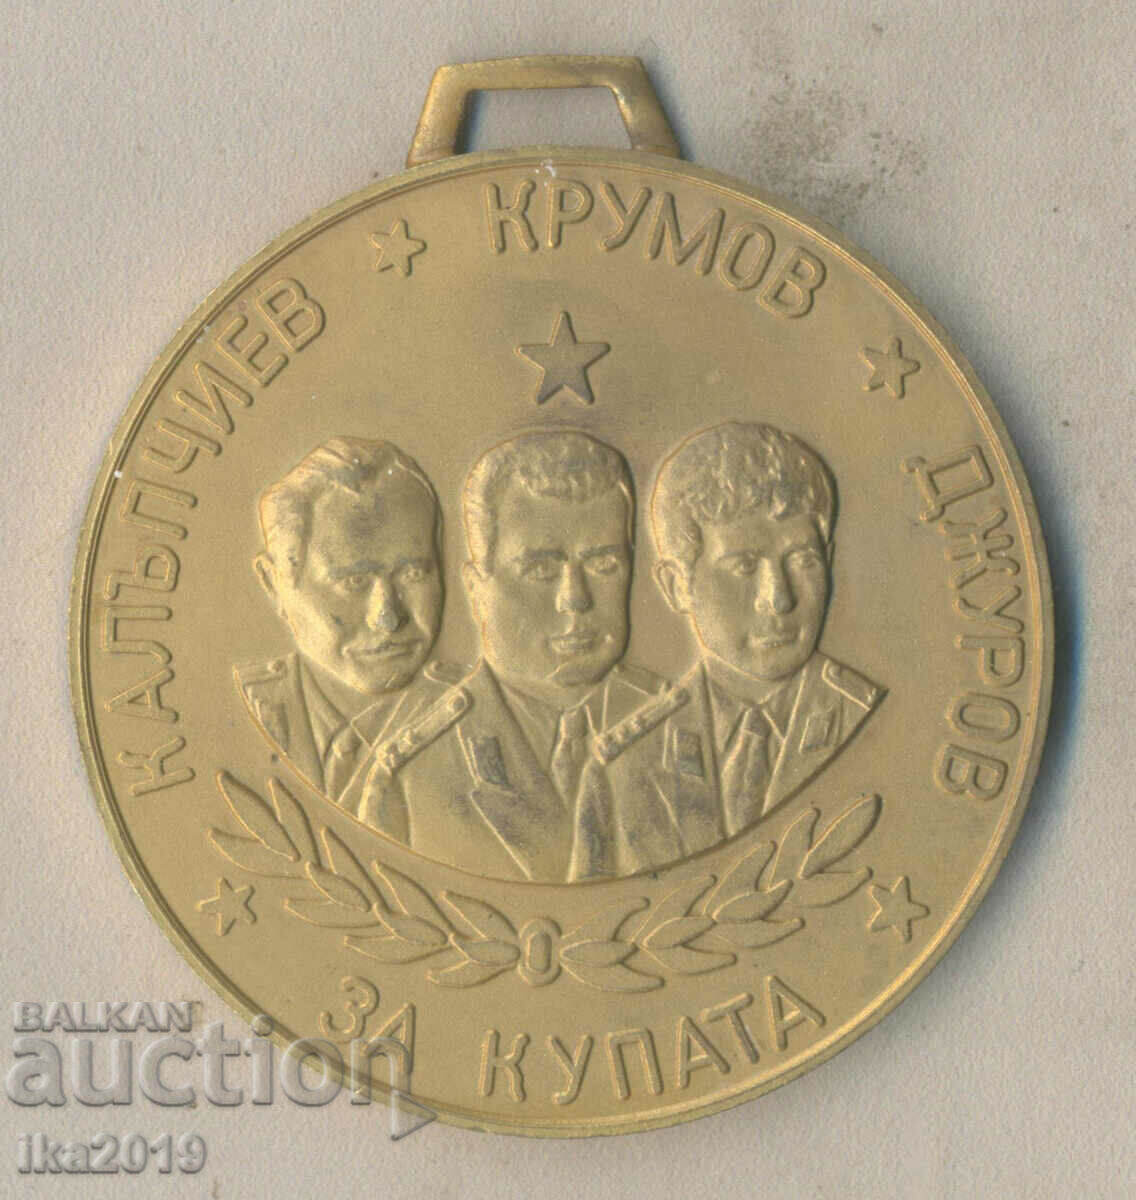 Medalie Rara Premiul Parașutist pentru Cupa Kalupchiev Krumov J